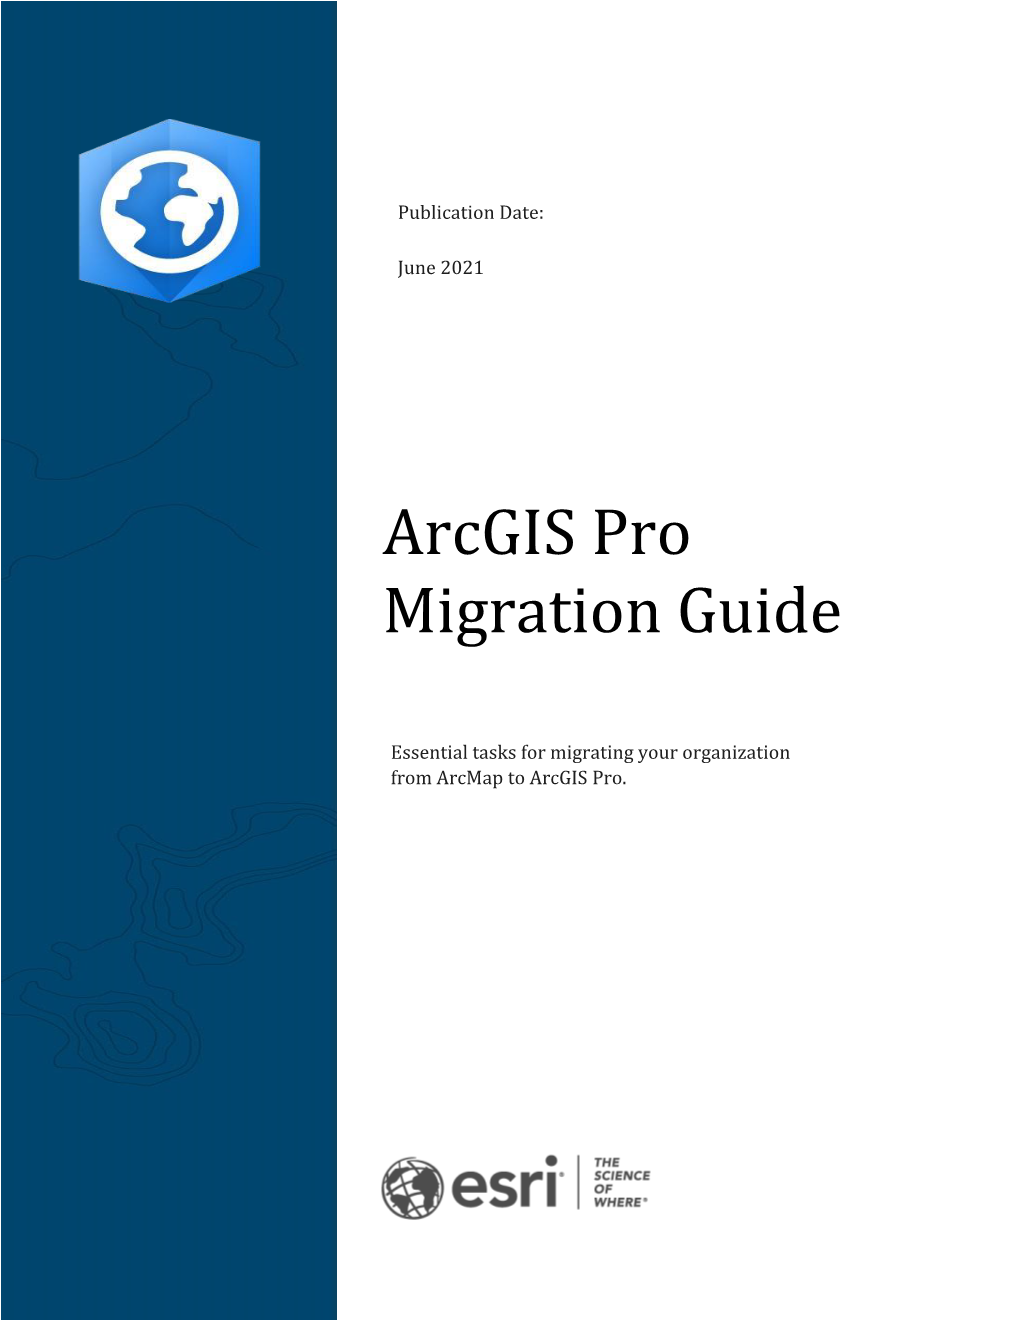 Arcgis Pro Migration Guide